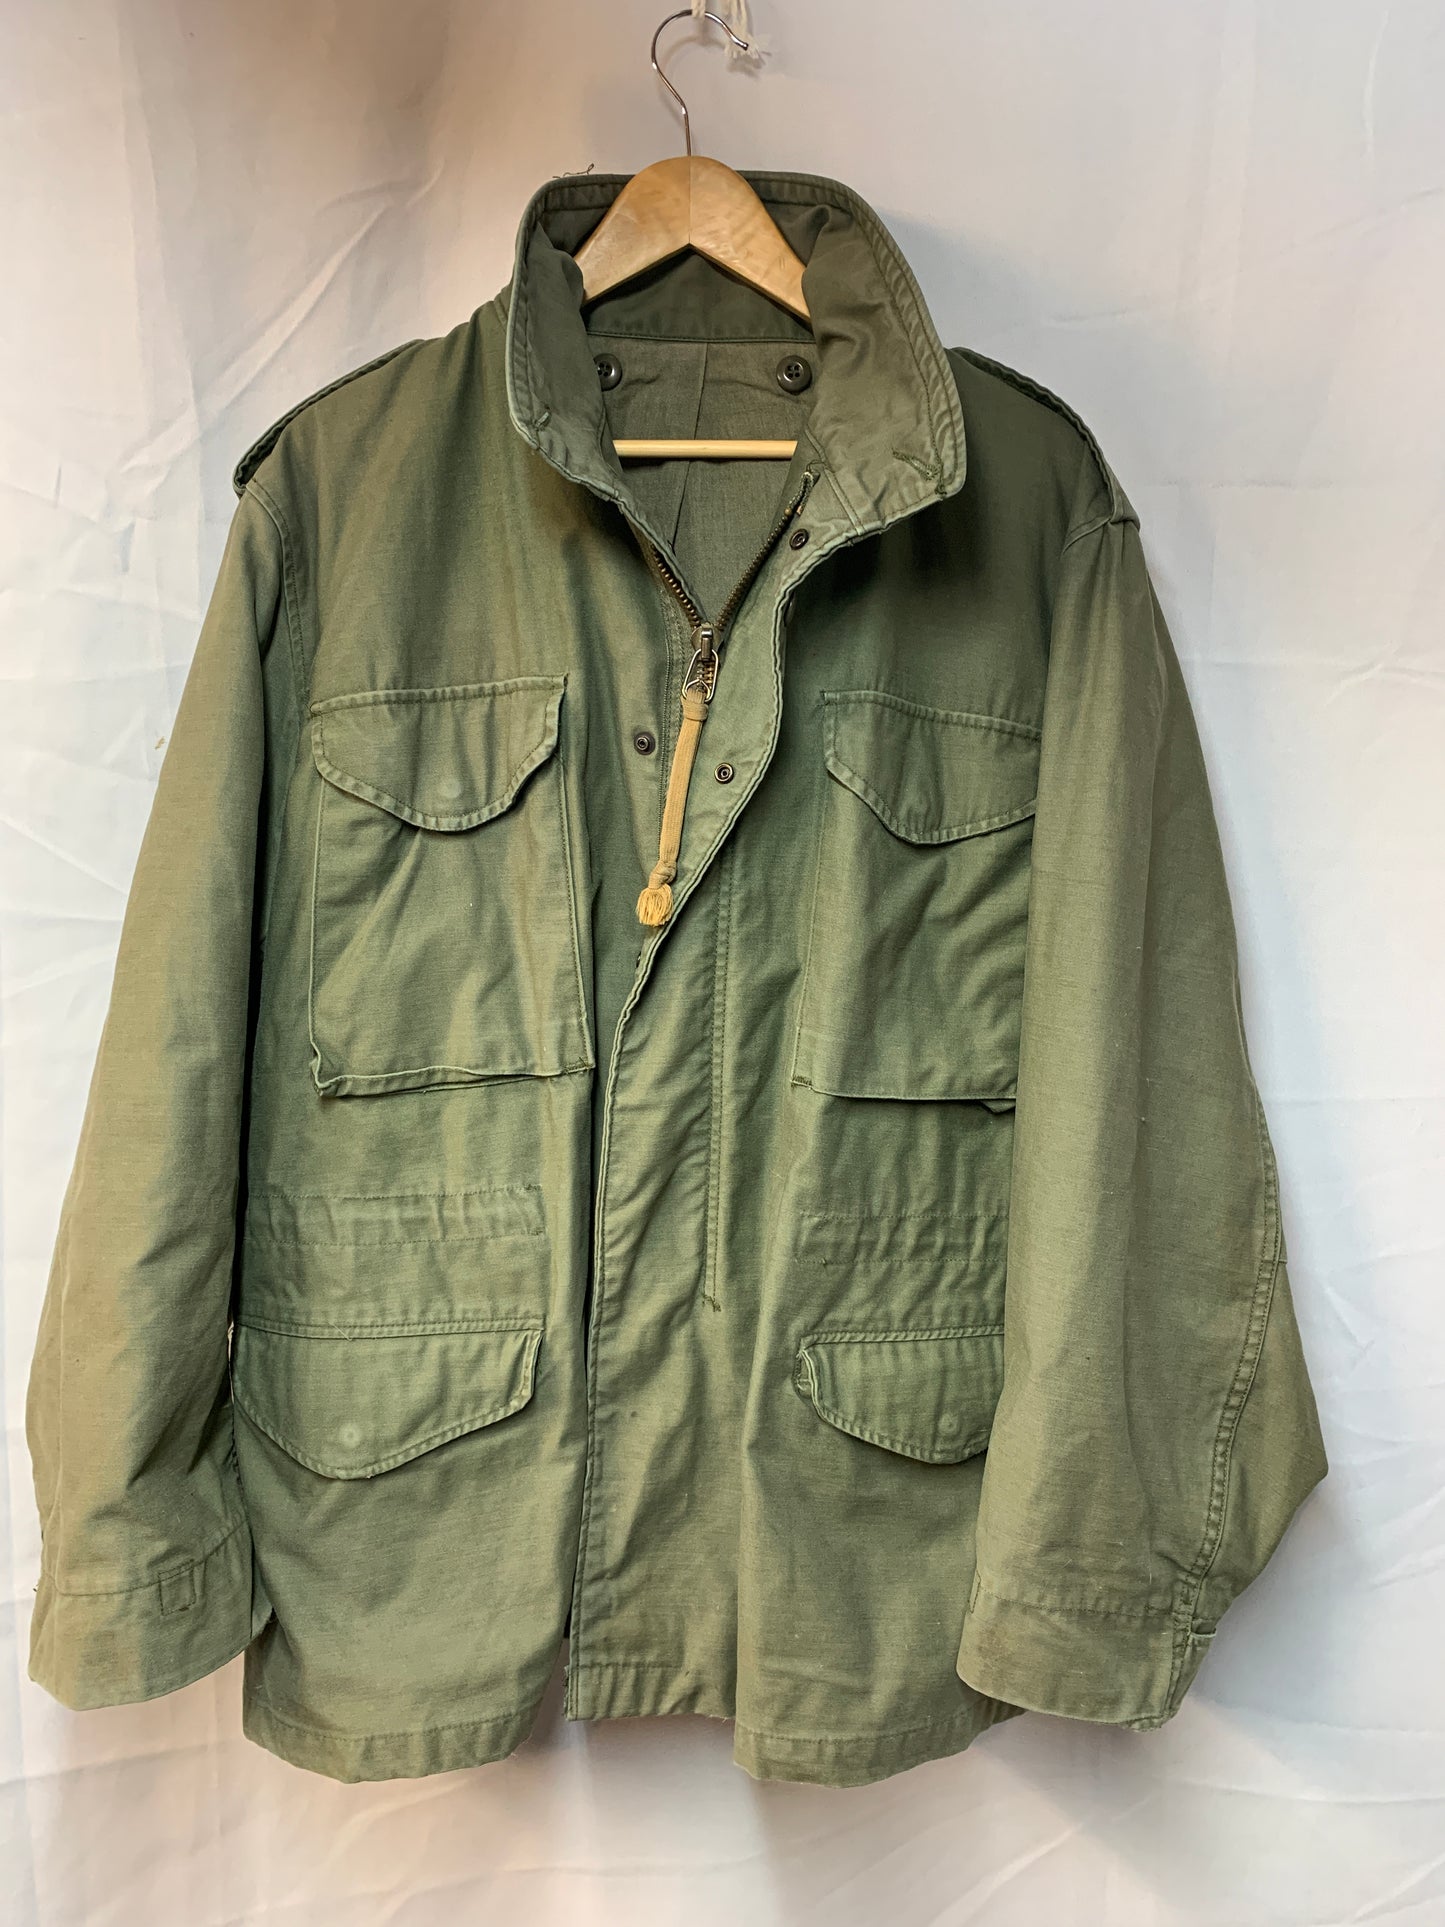 1980's M-65 Field Coat / Jacket - Medium Regular